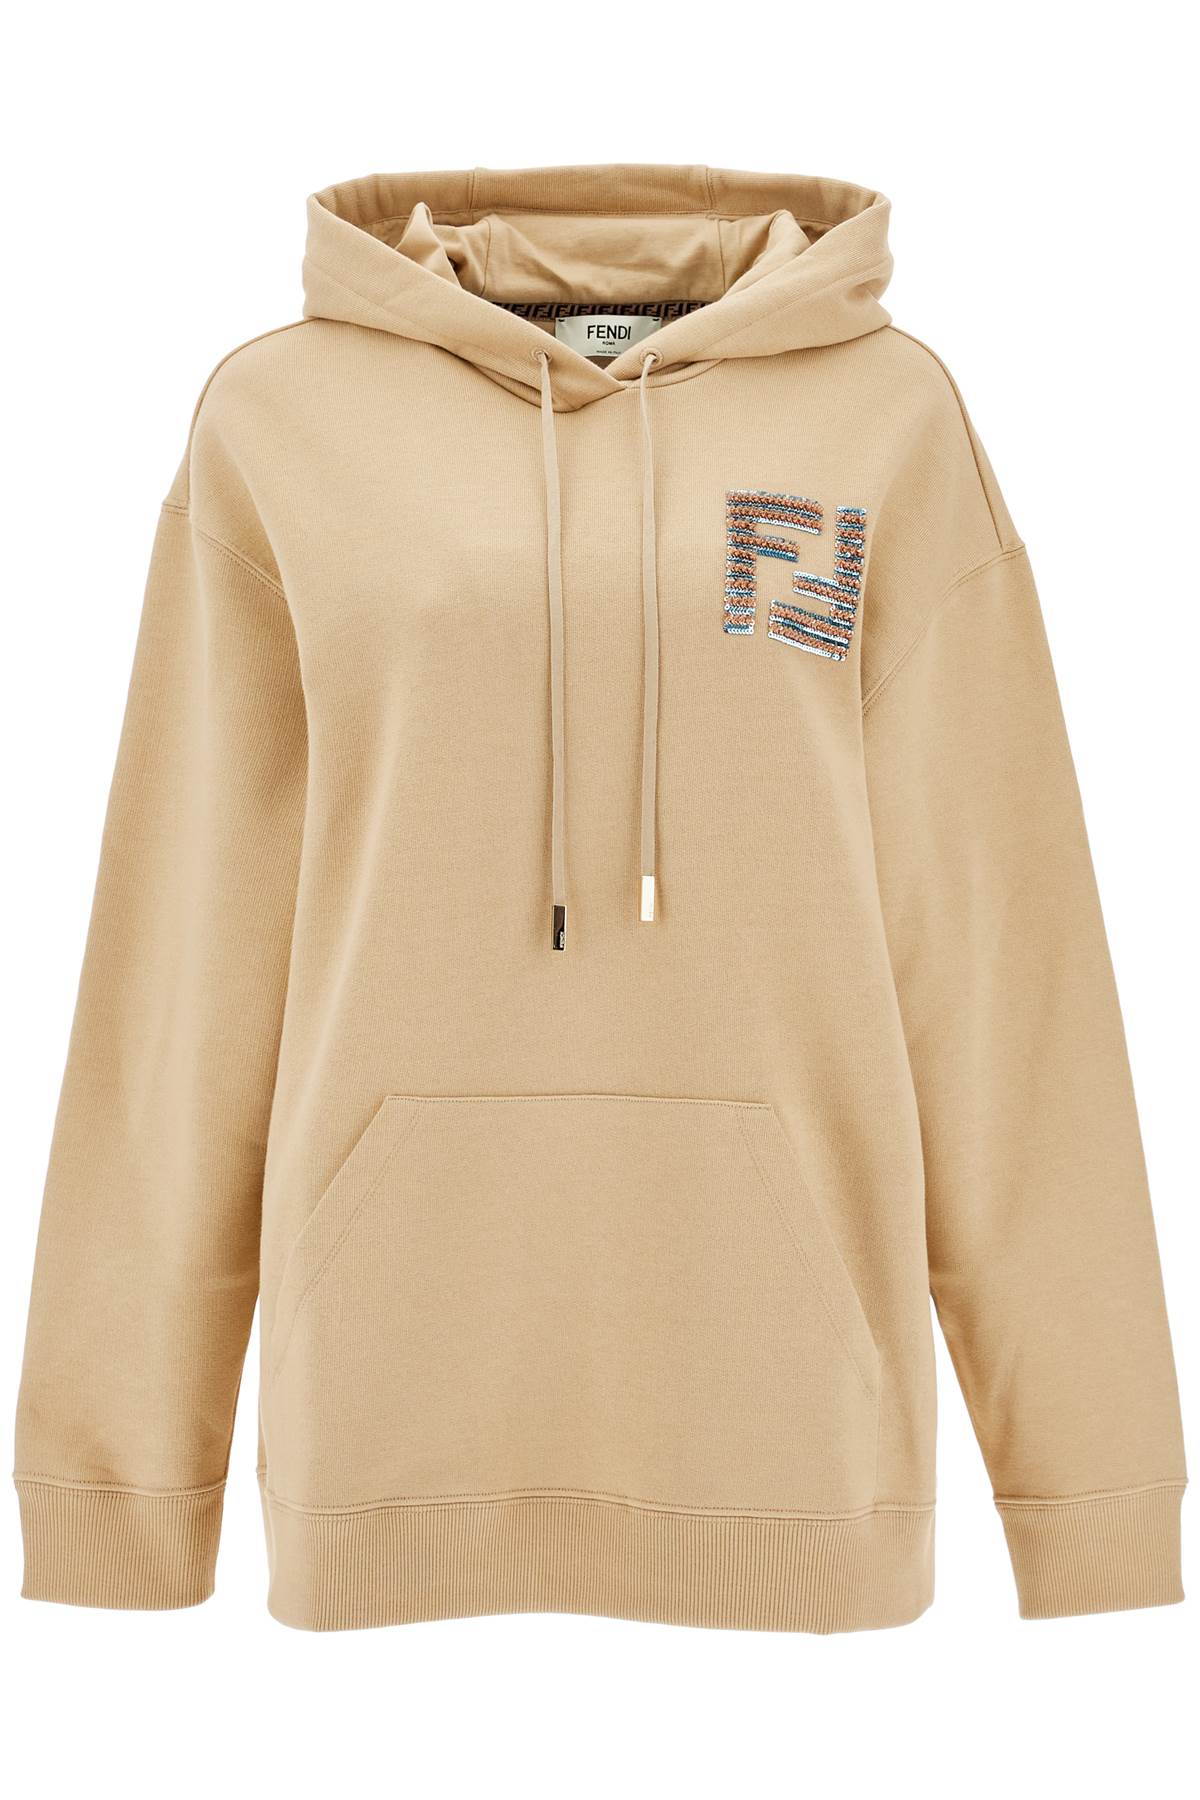 FENDI FENDI oversized hoodie with hood